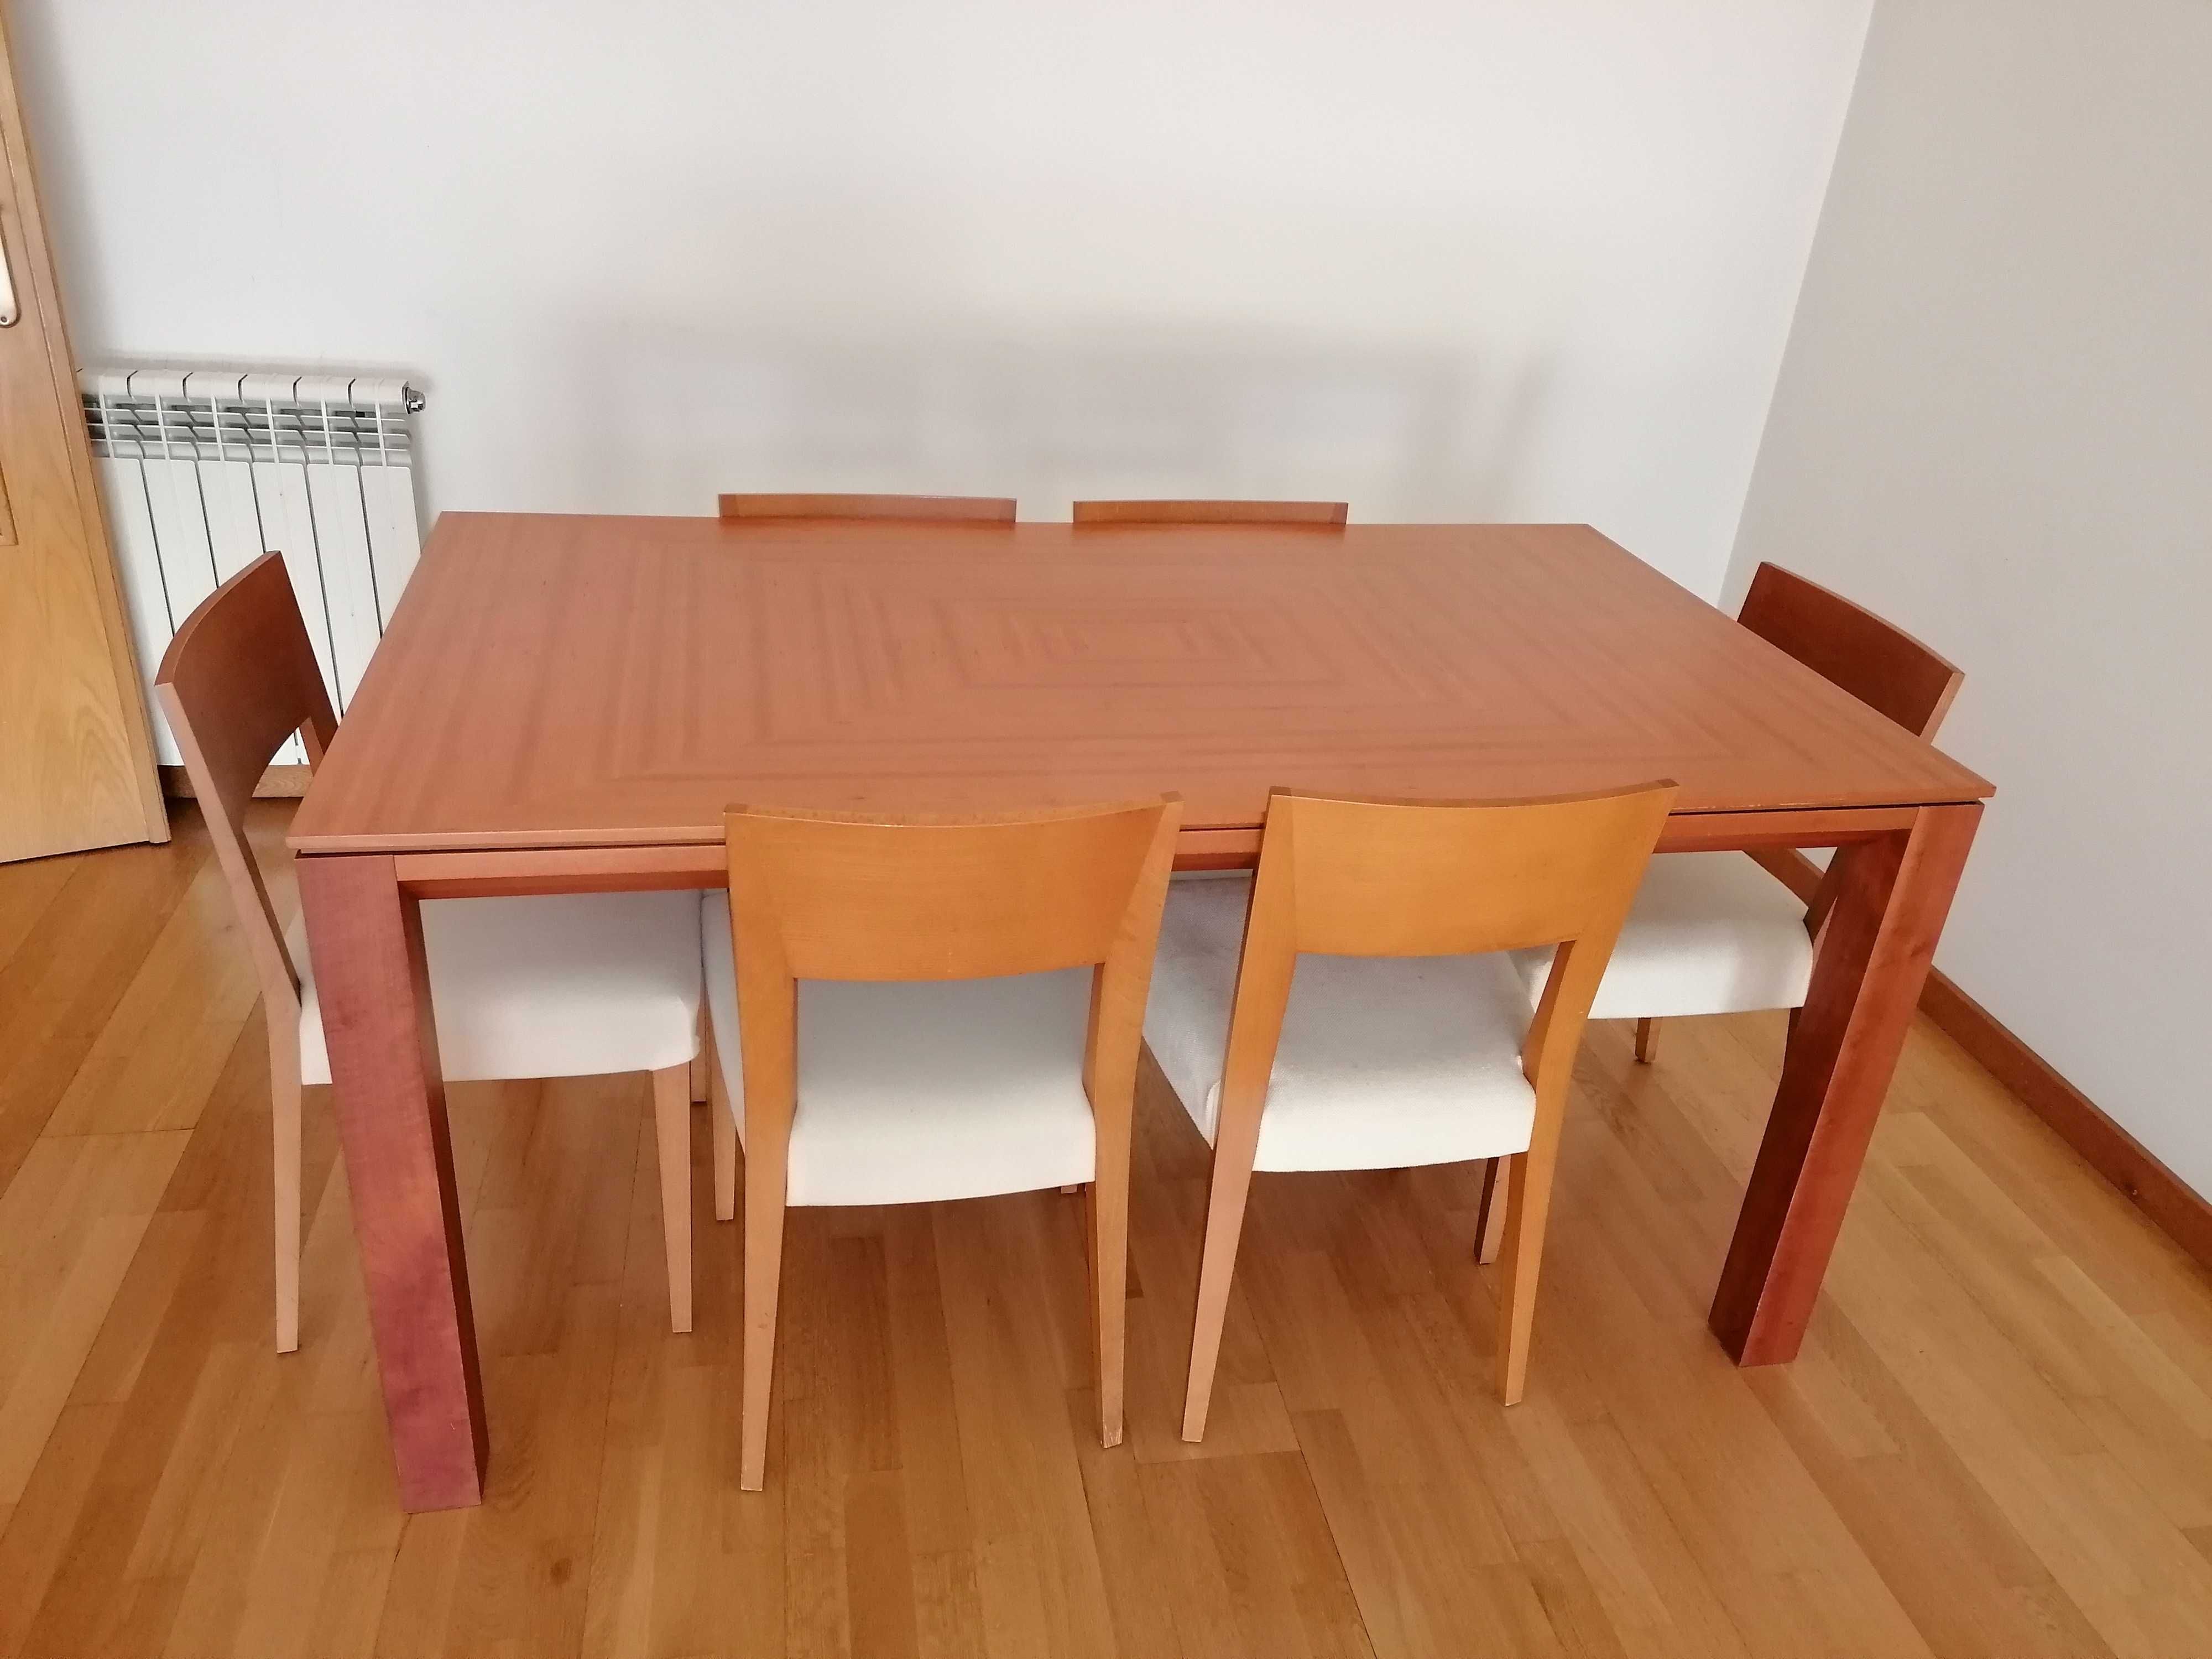 Mesa de Jantar em madeira, com 6 cadeiras.